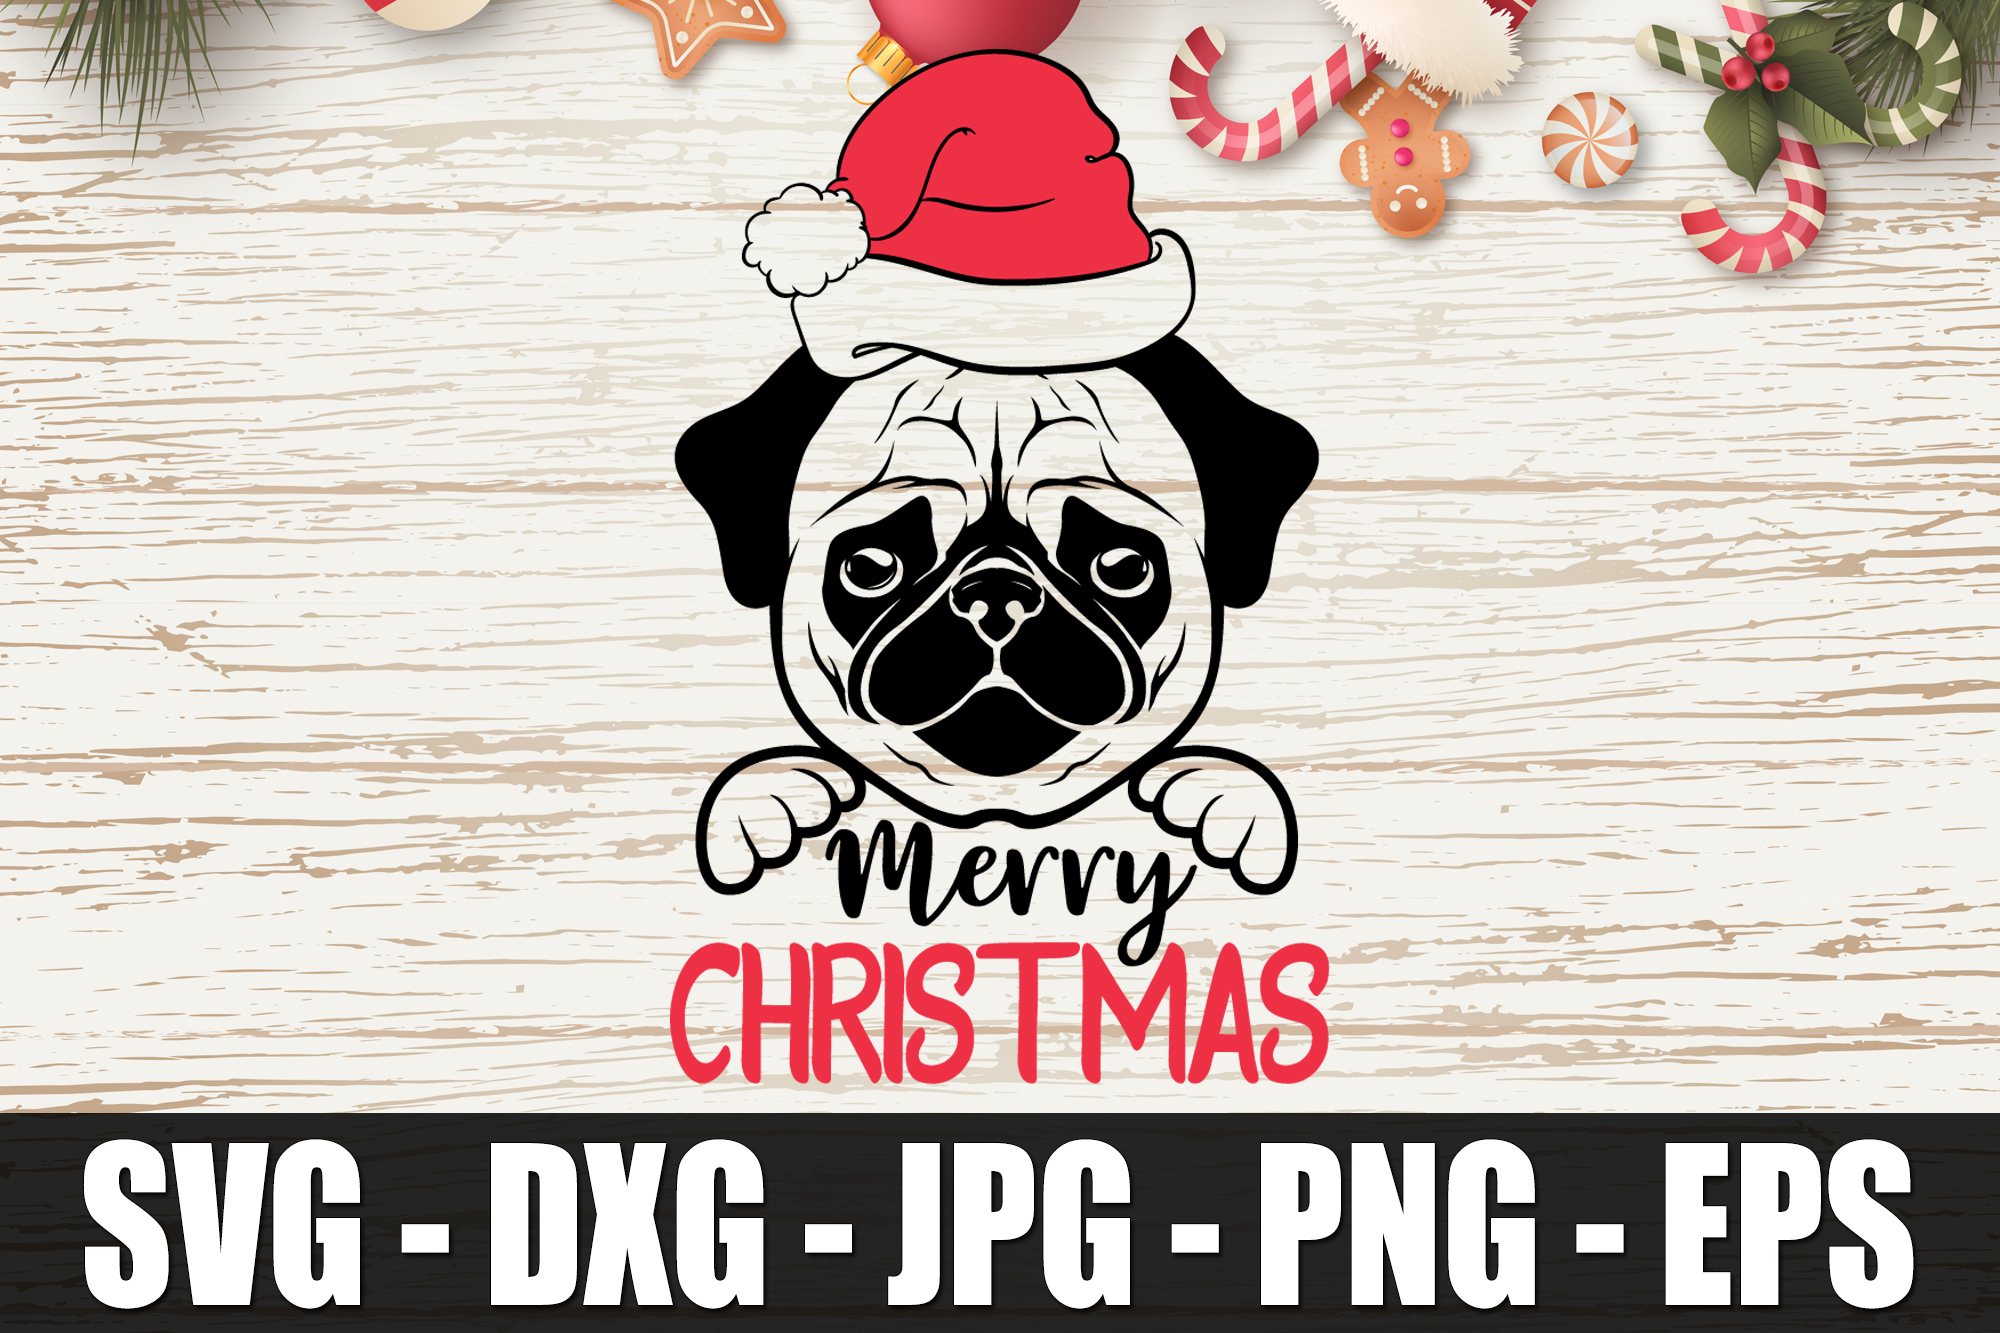 Merry Christmas, Pug Christmas SVG DXF EPS Christmas Dog Pug